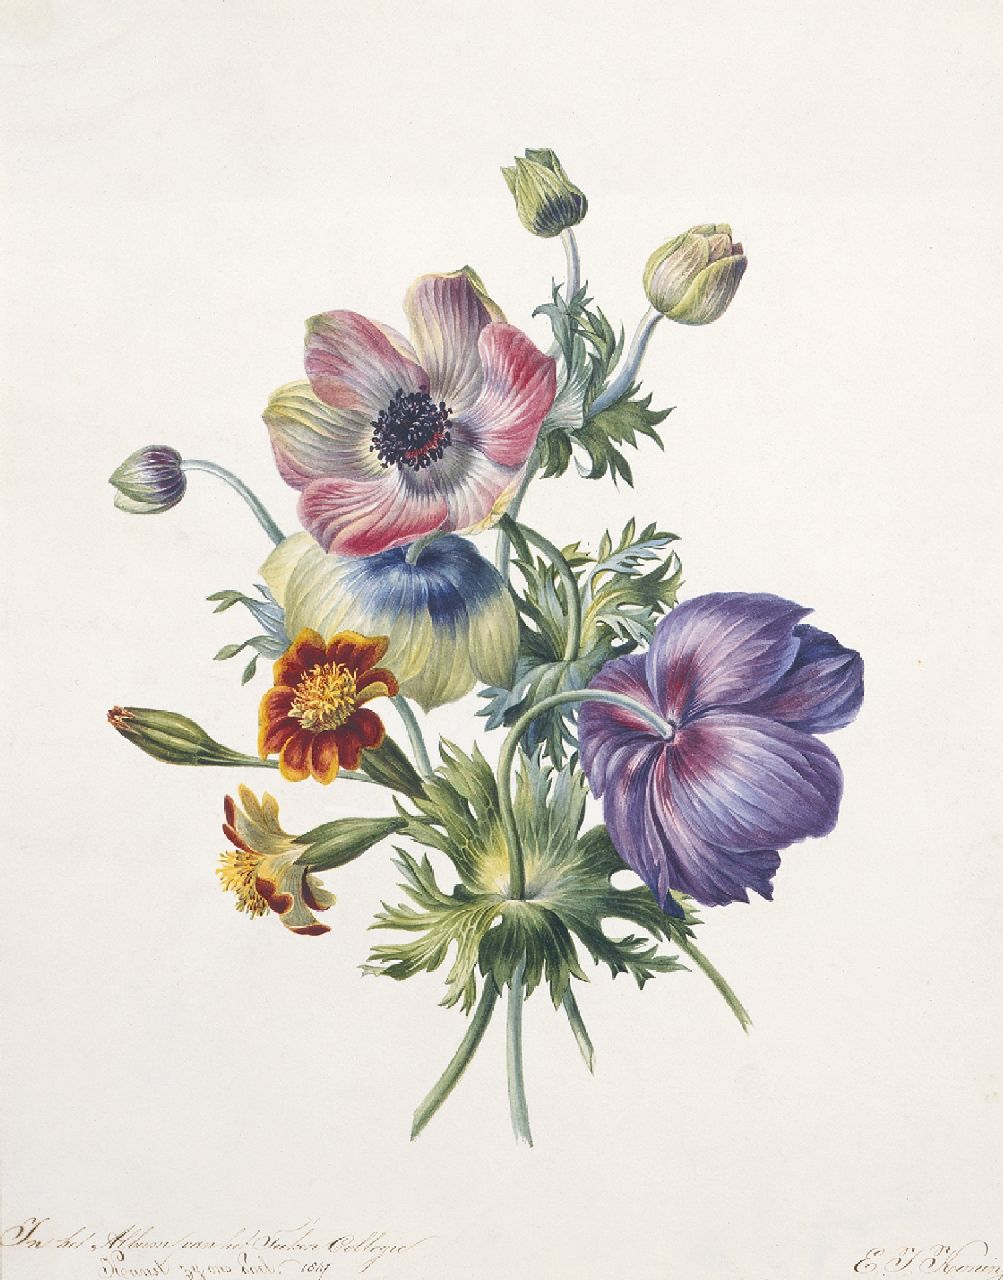 Koning E.J.  | Elisabeth Johanna Koning, Studie van takjes anemonen, aquarel op papier 32,2 x 25,6 cm, gesigneerd rechtsonder en gedateerd 1847